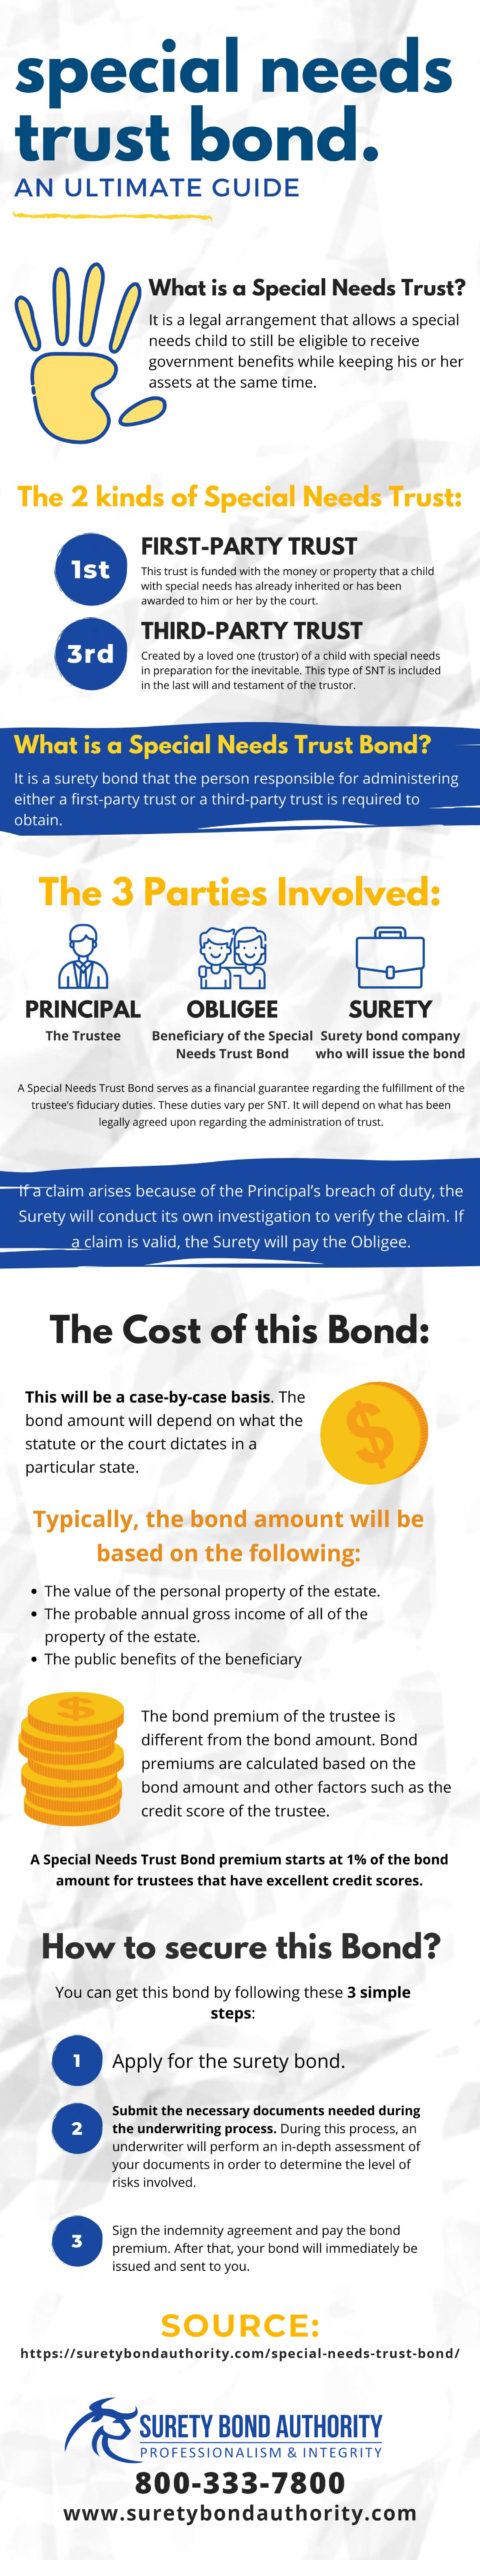 Herstellen Leuren Goed opgeleid INFOGRAPHIC:Special Needs Trust Bond | Surety Bond Authority